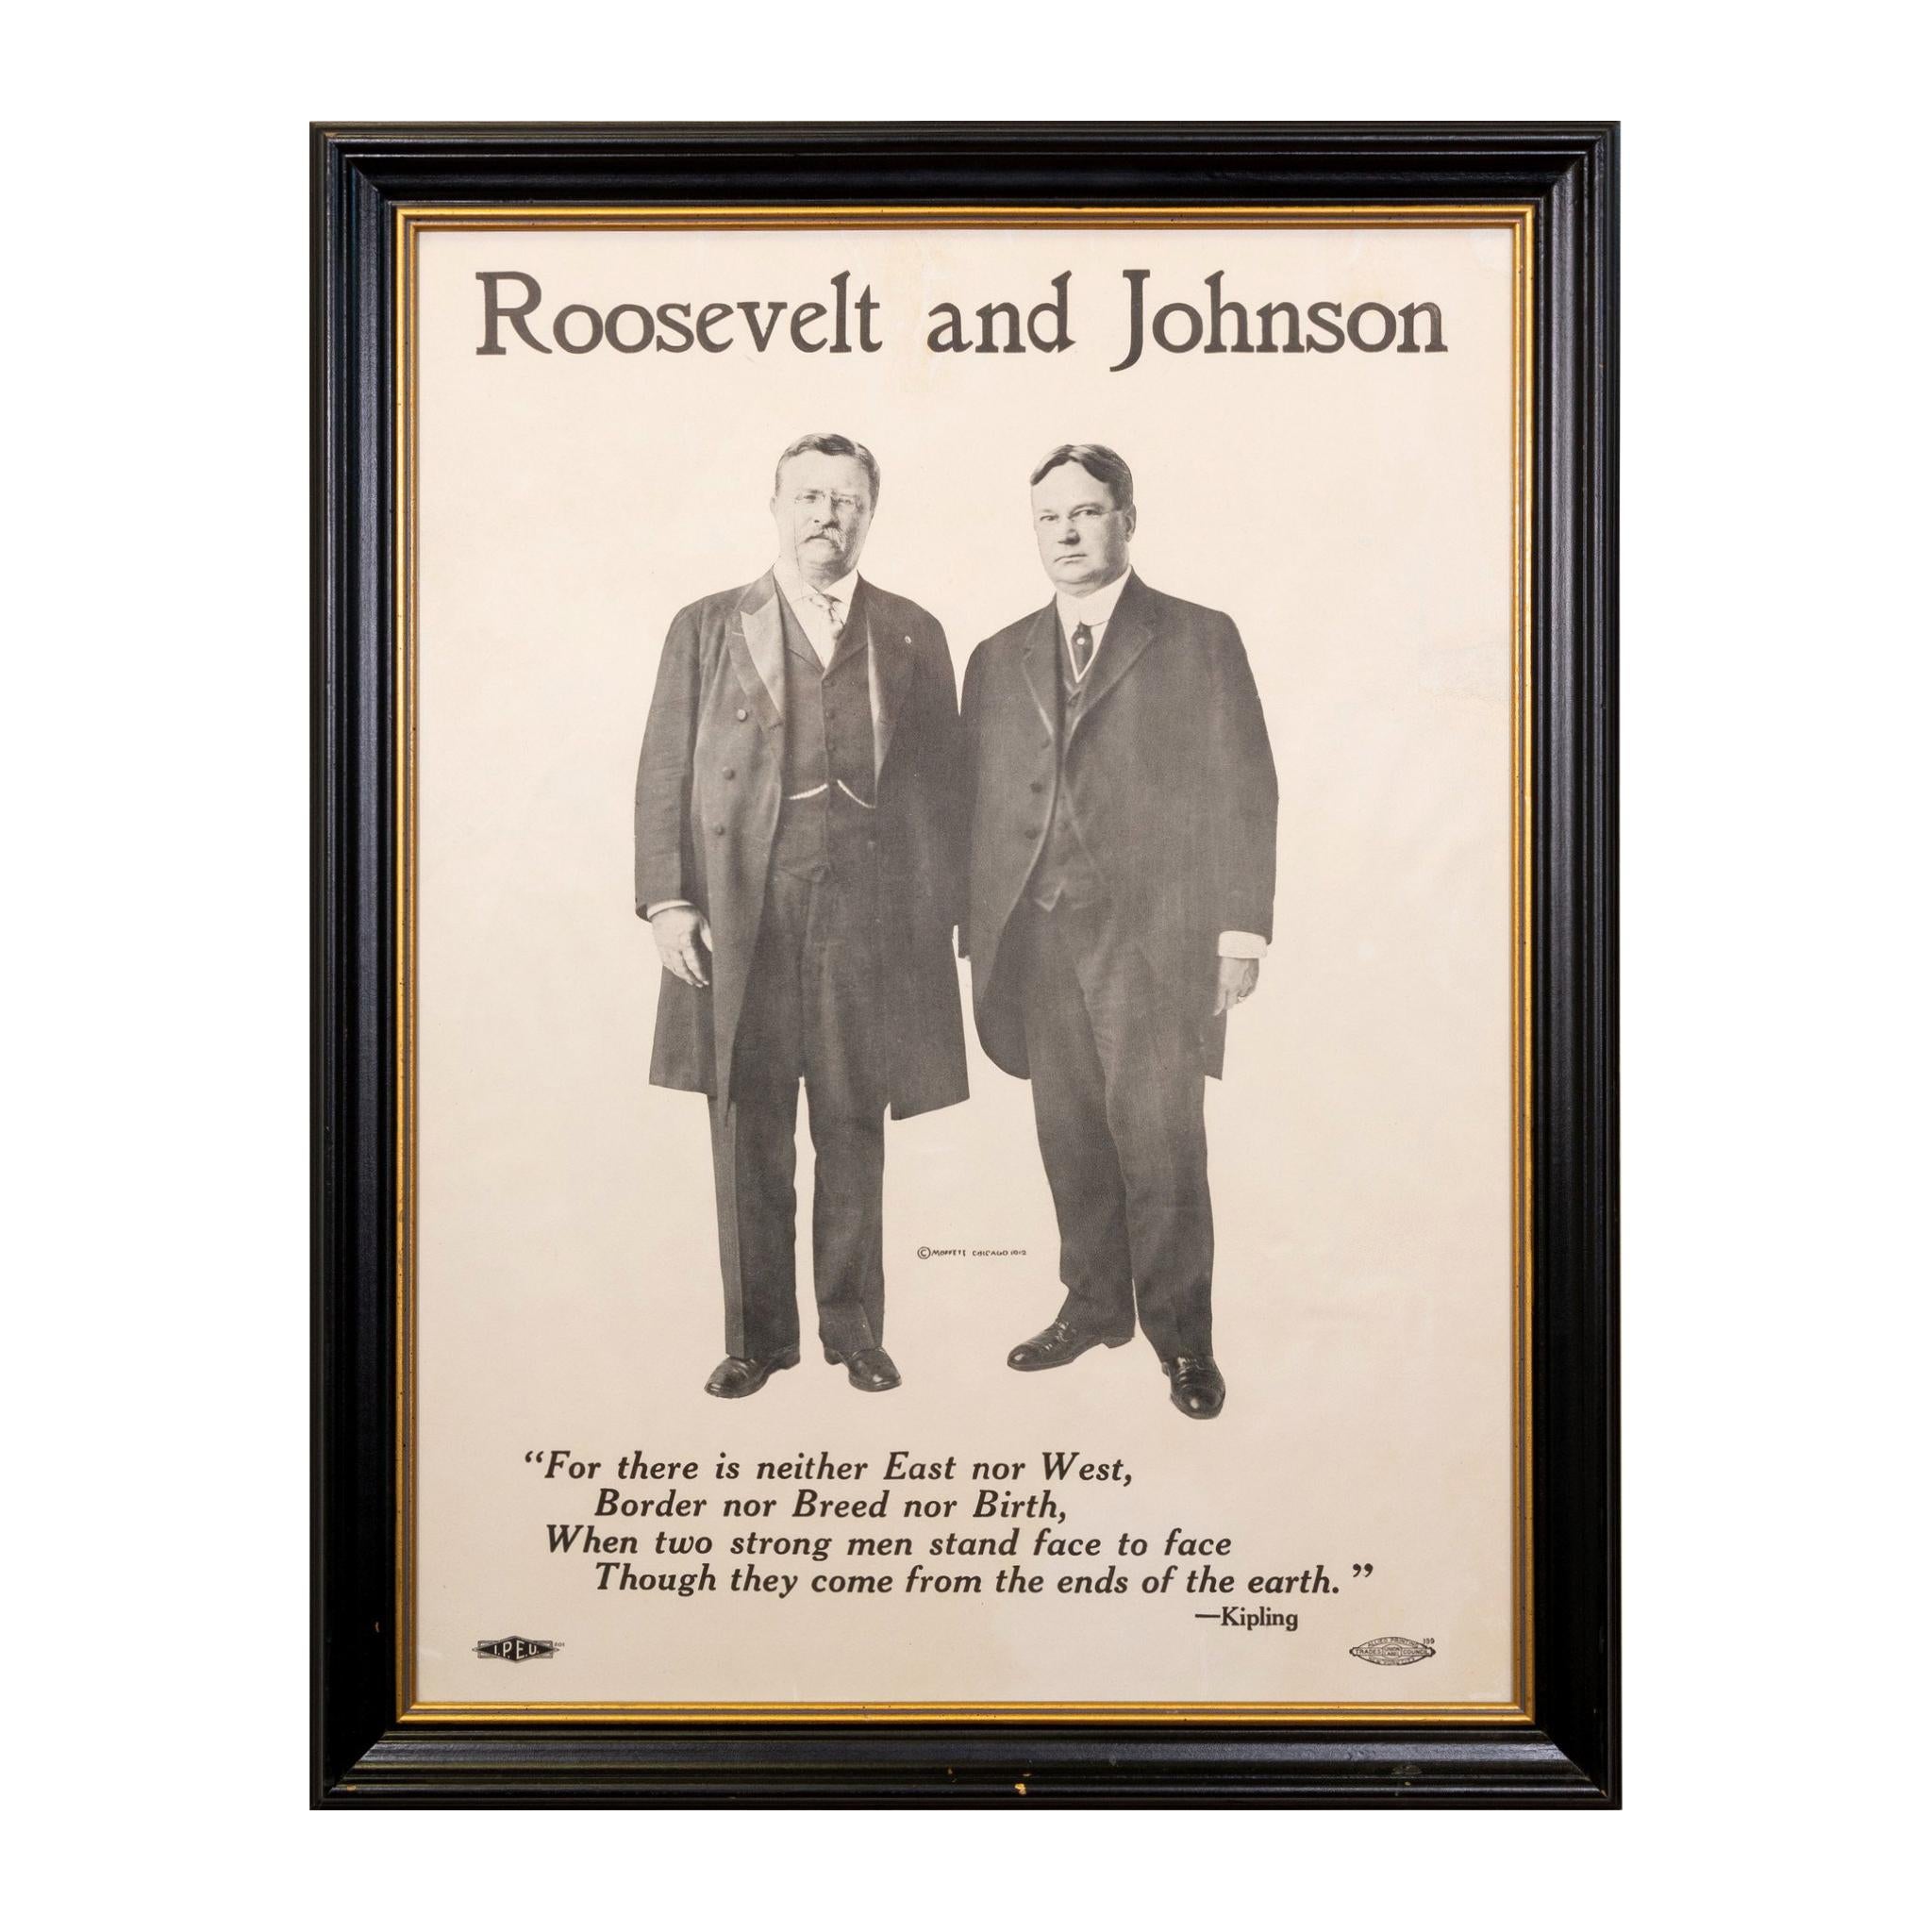 Affiche de la campagne Roosevelt et Johnson « Teddy » de 1912